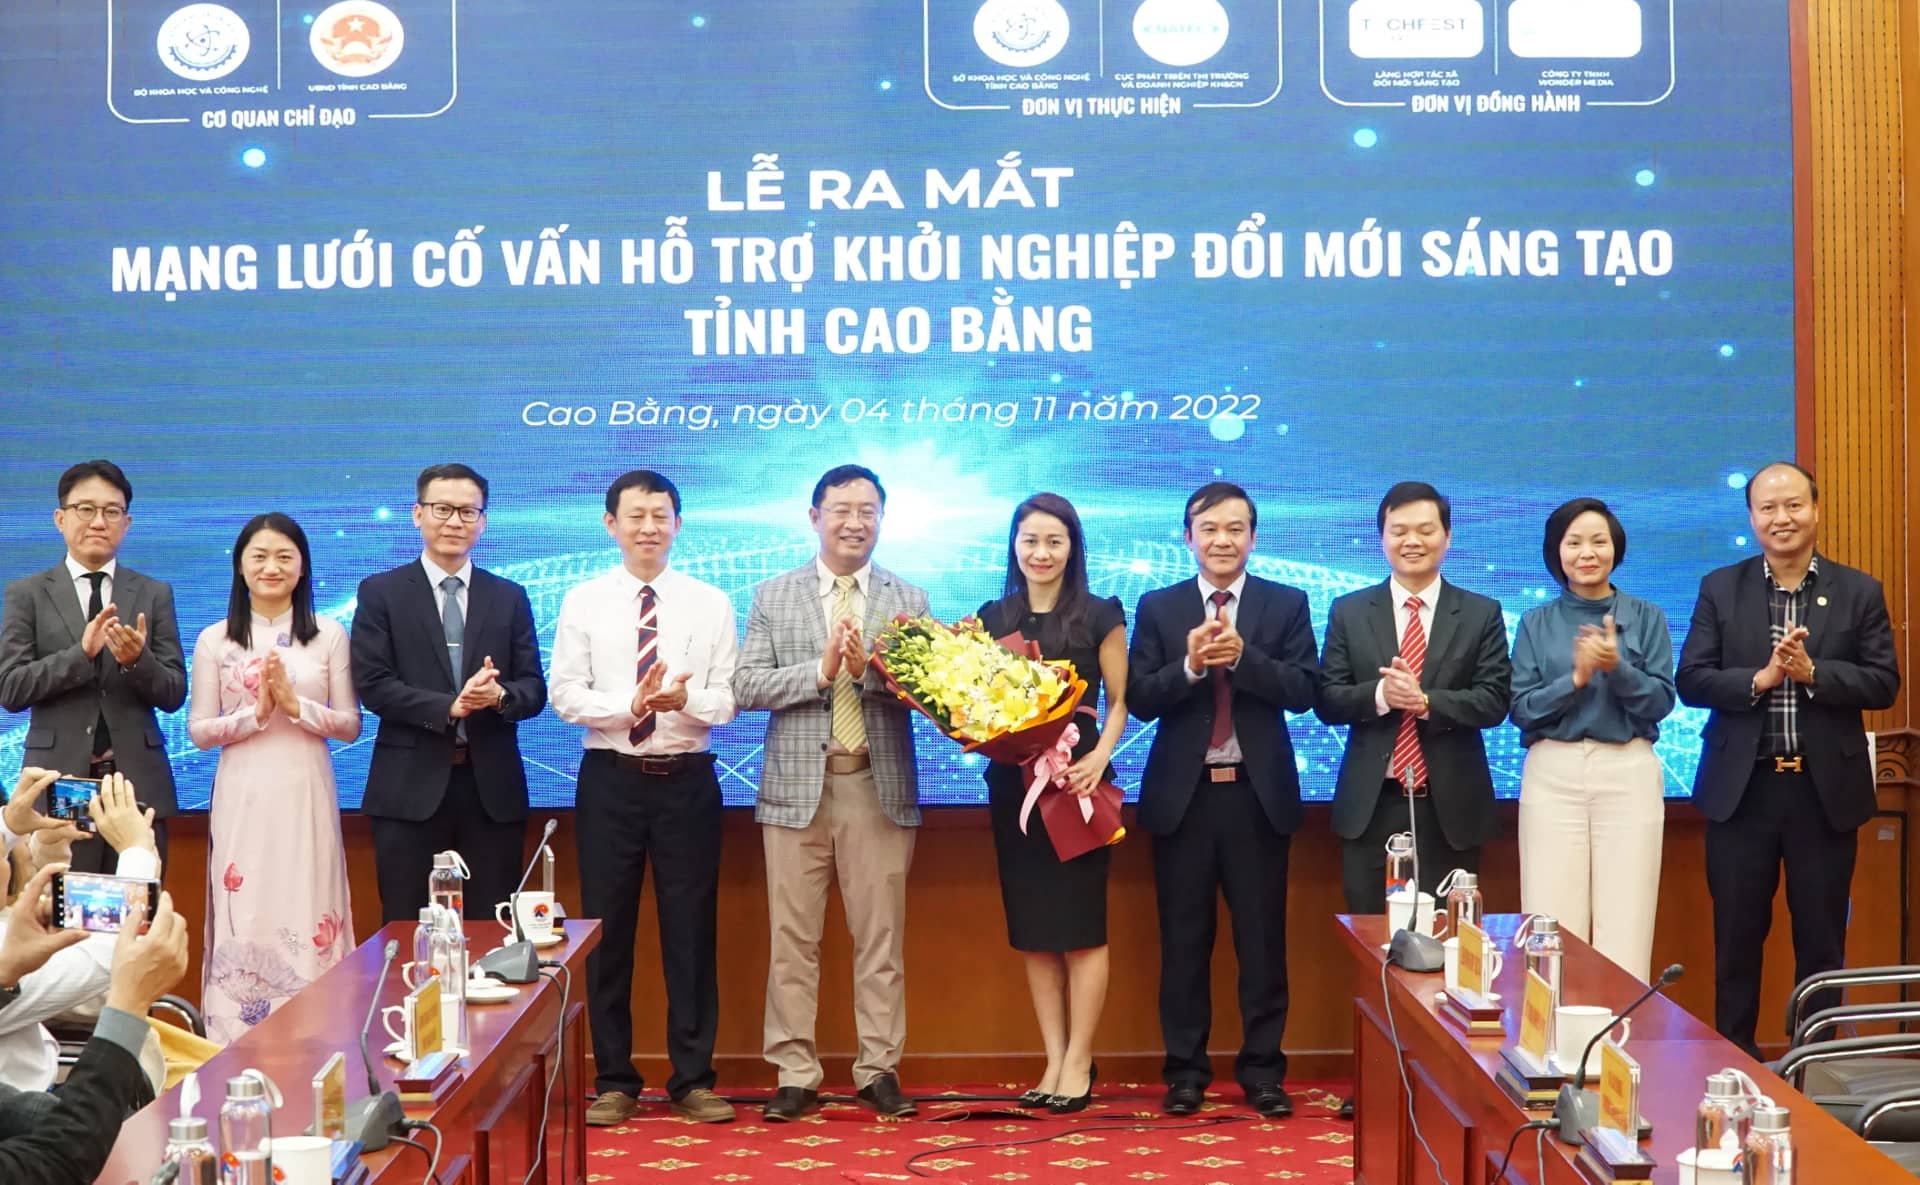 Lễ ra mắt Mạng lưới cố vấn hỗ trợ khởi nghiệp đổi mới sáng tạo tỉnh Cao Bằng